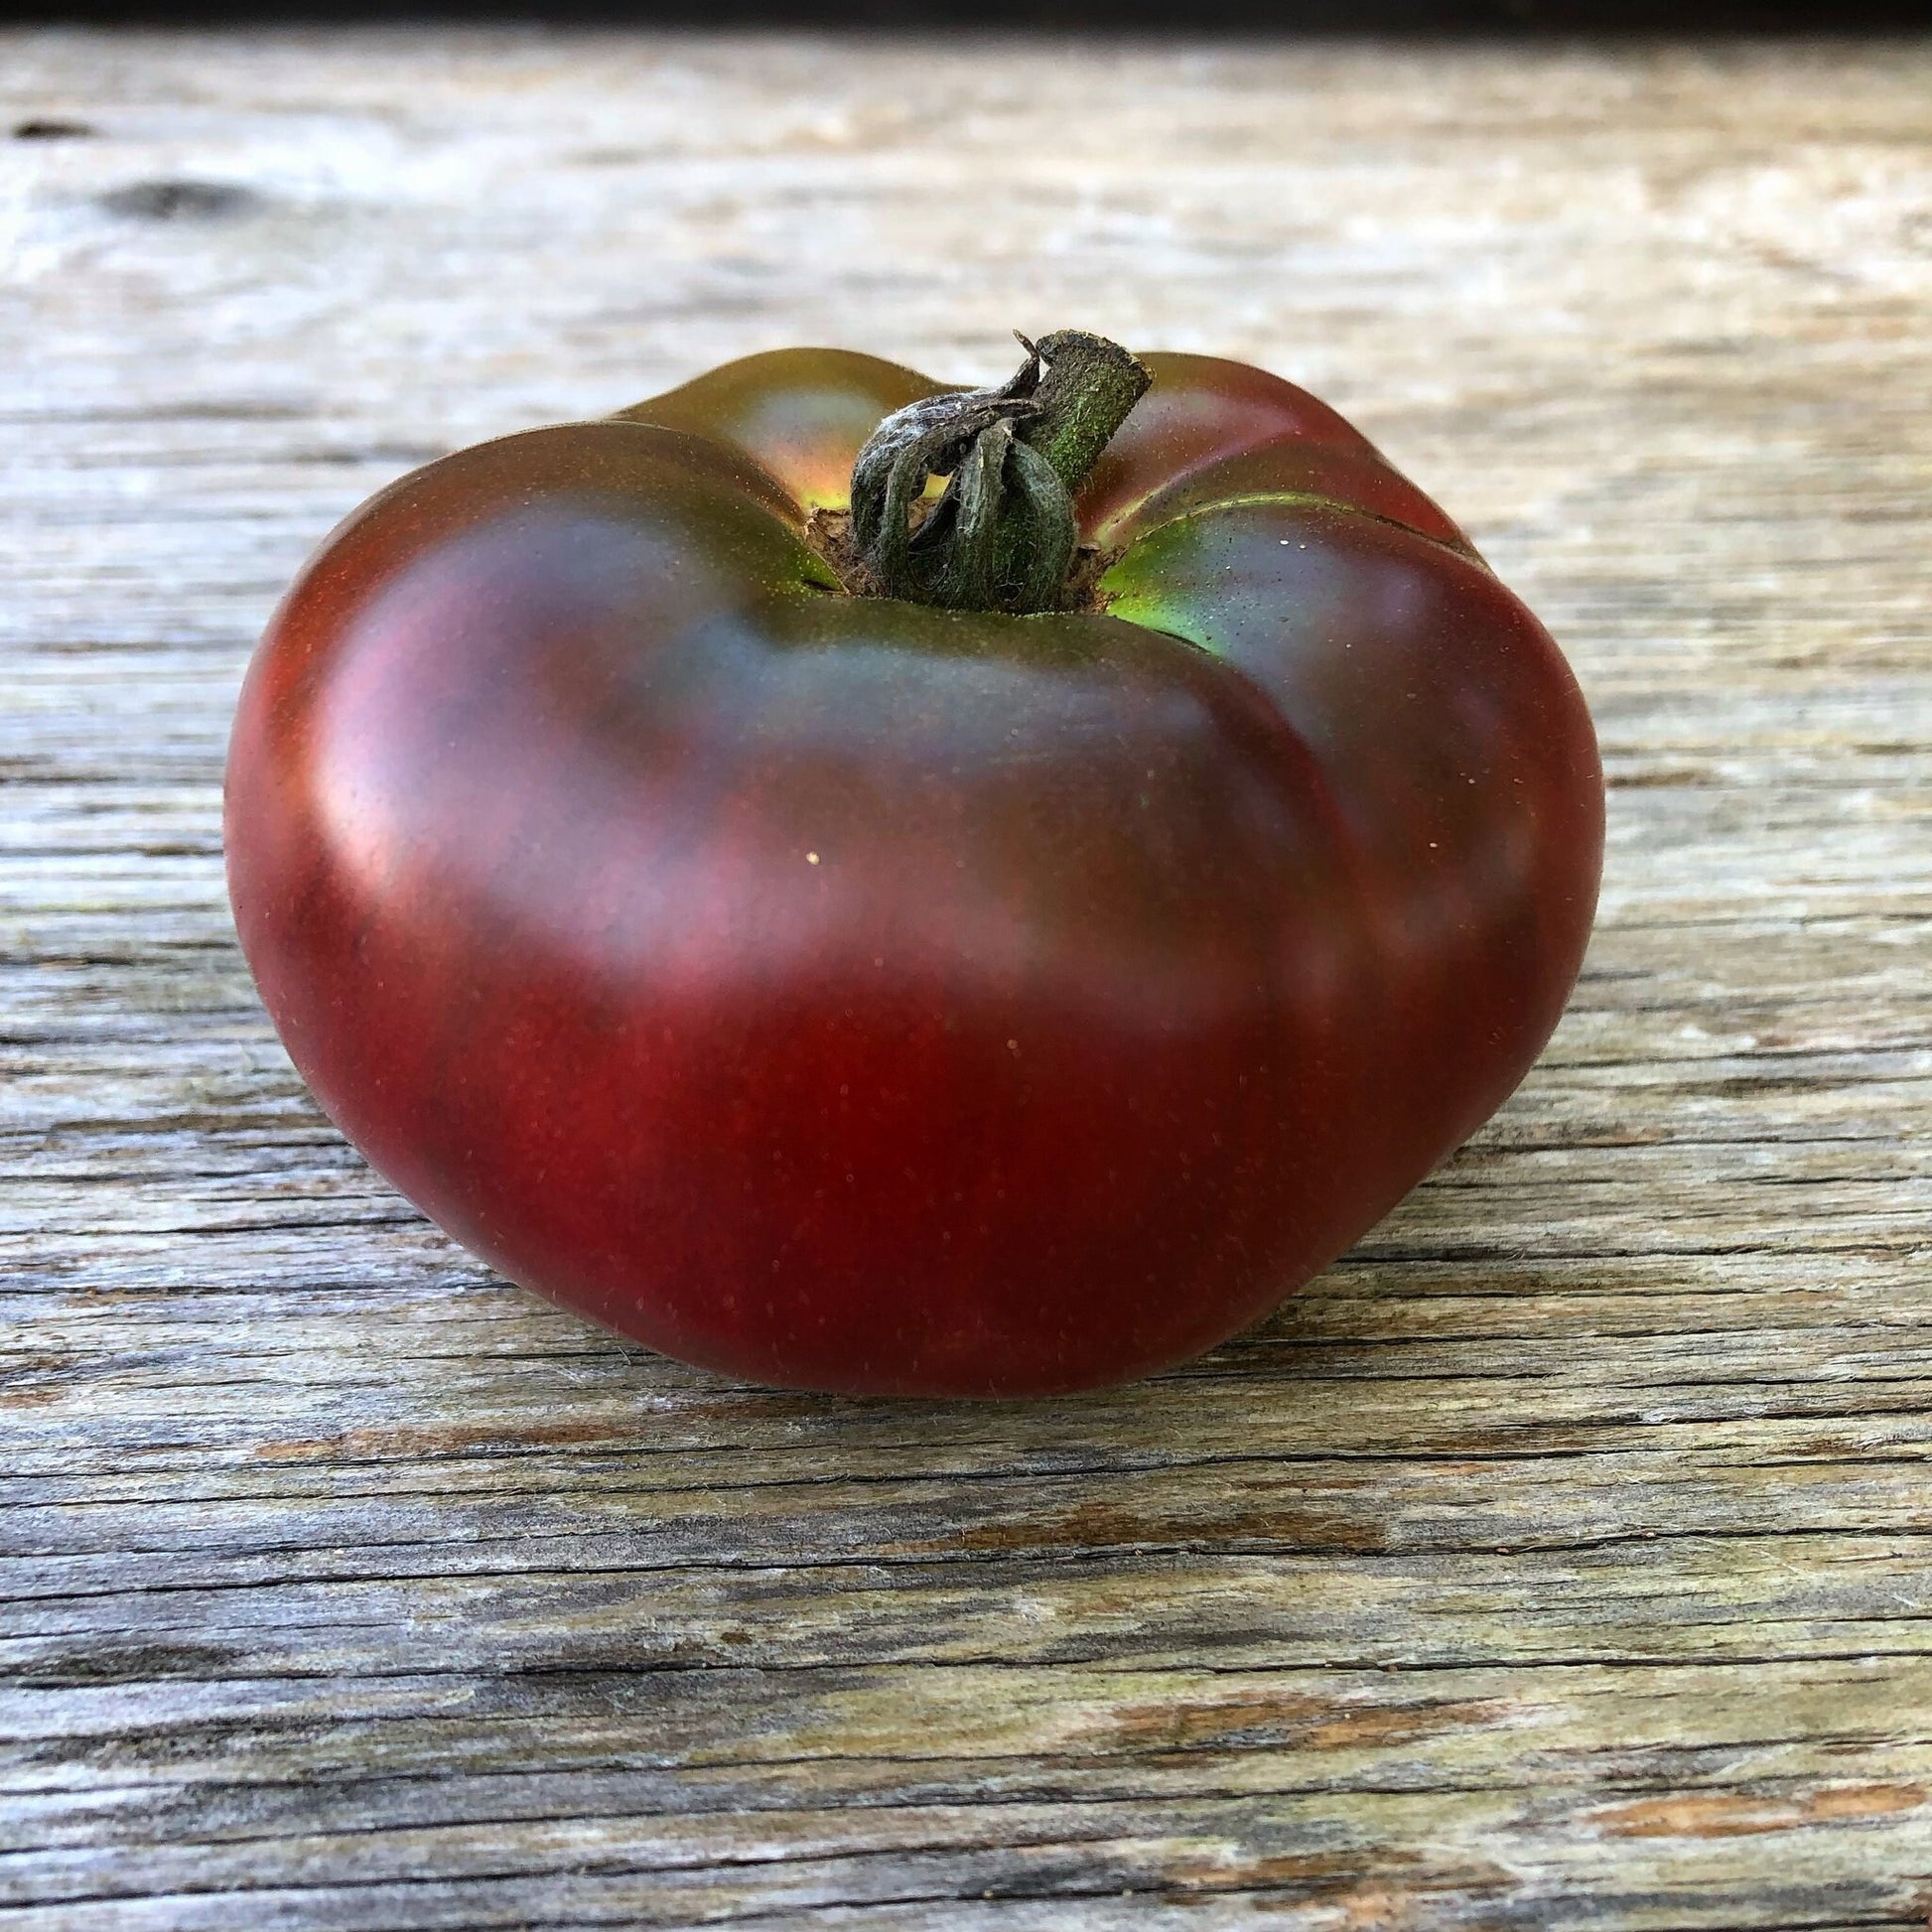 Carbon tomato seeds Tasmania 